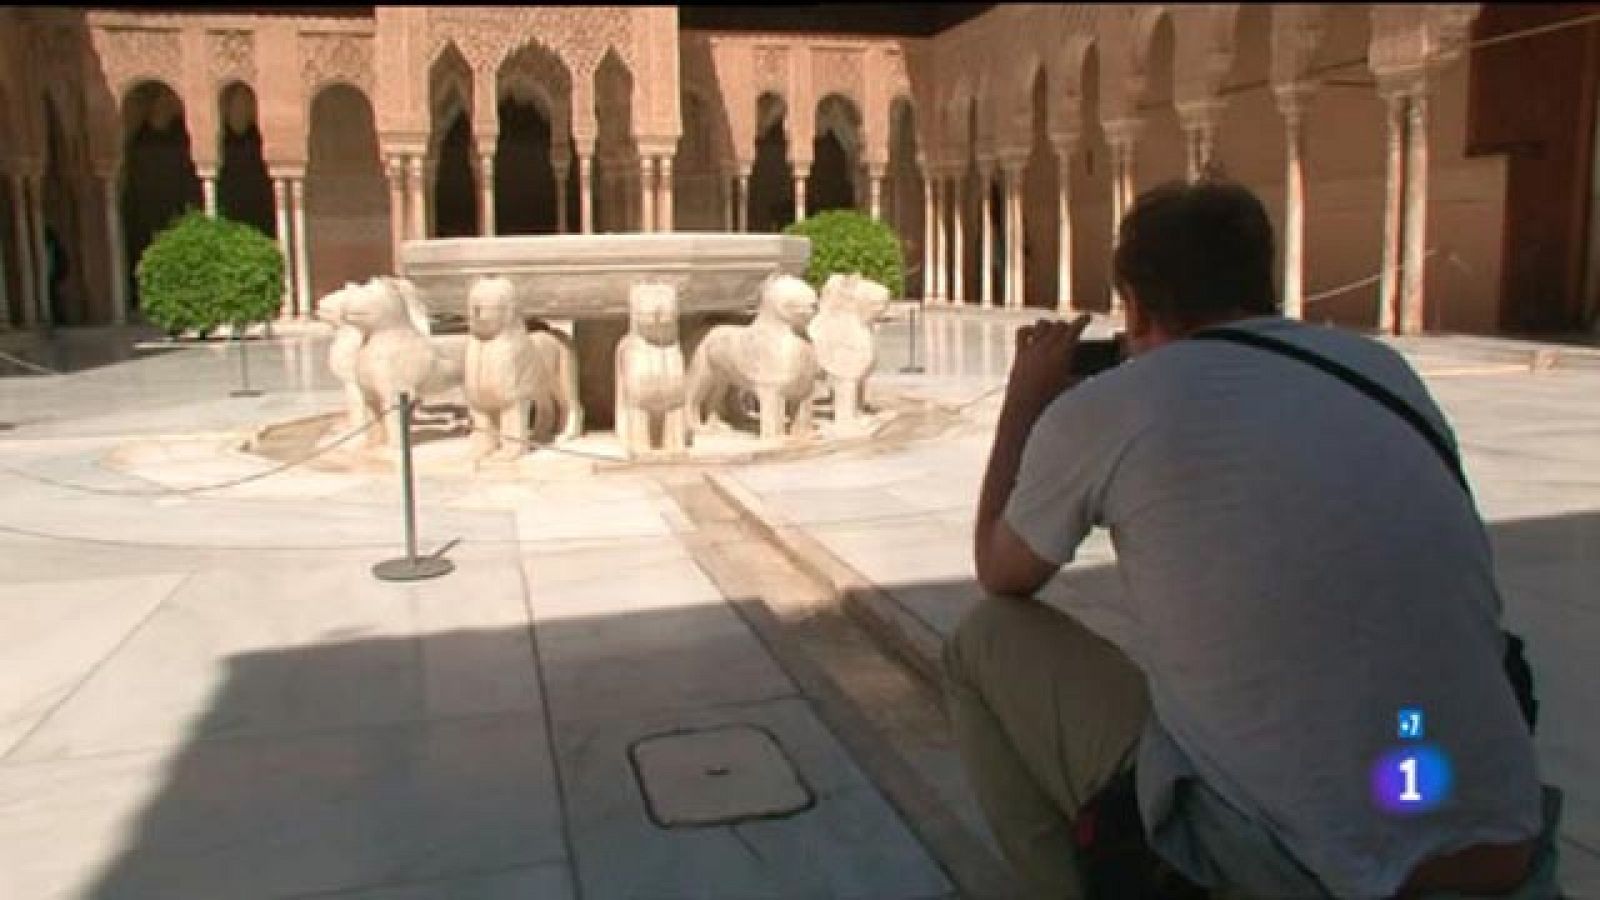 Comando actualidad - Mi tesoro - El monumento más visitado es La Alhambra